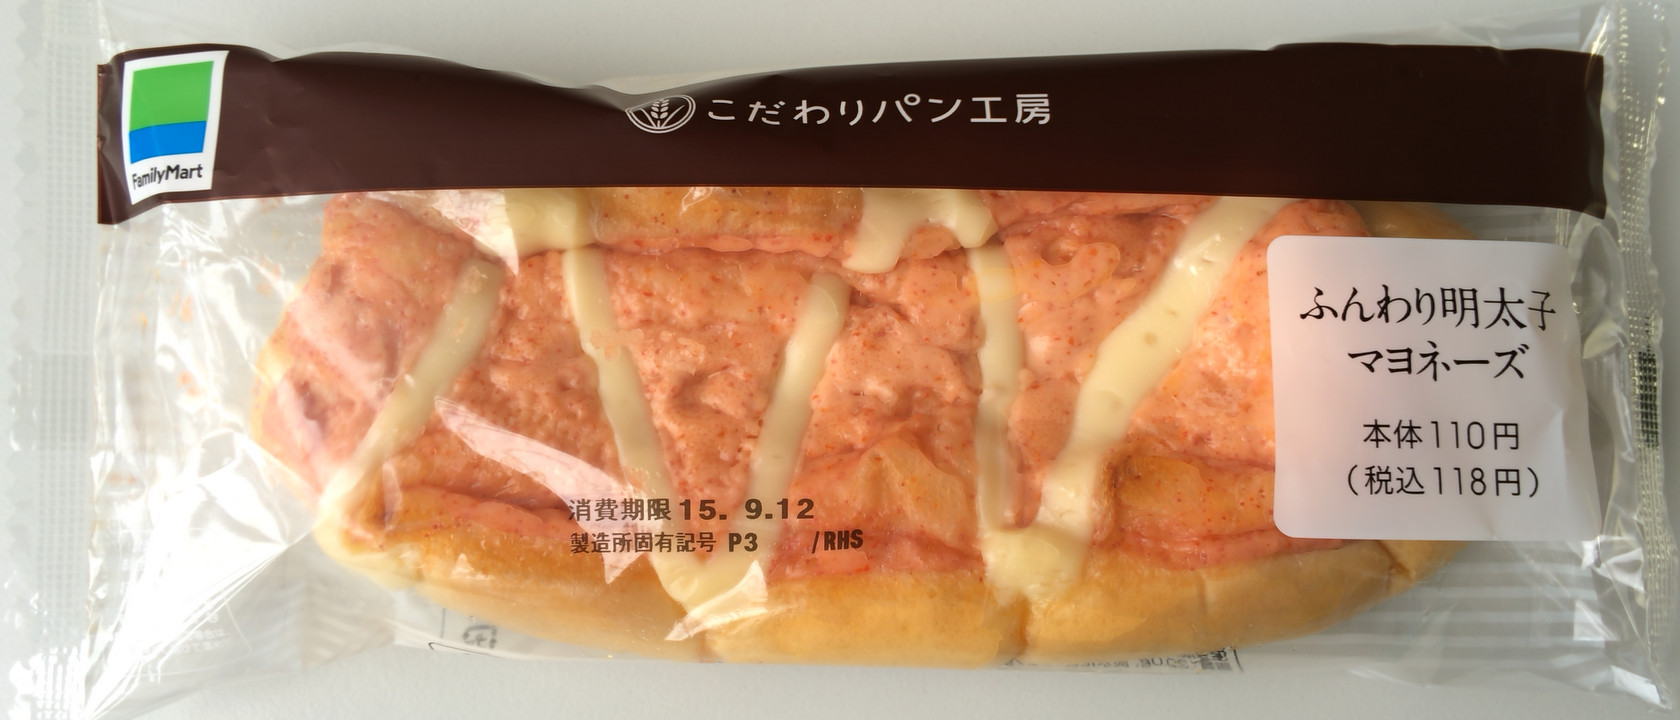 ファミリーマート 敷島製パン ふんわり明太子マヨネーズ